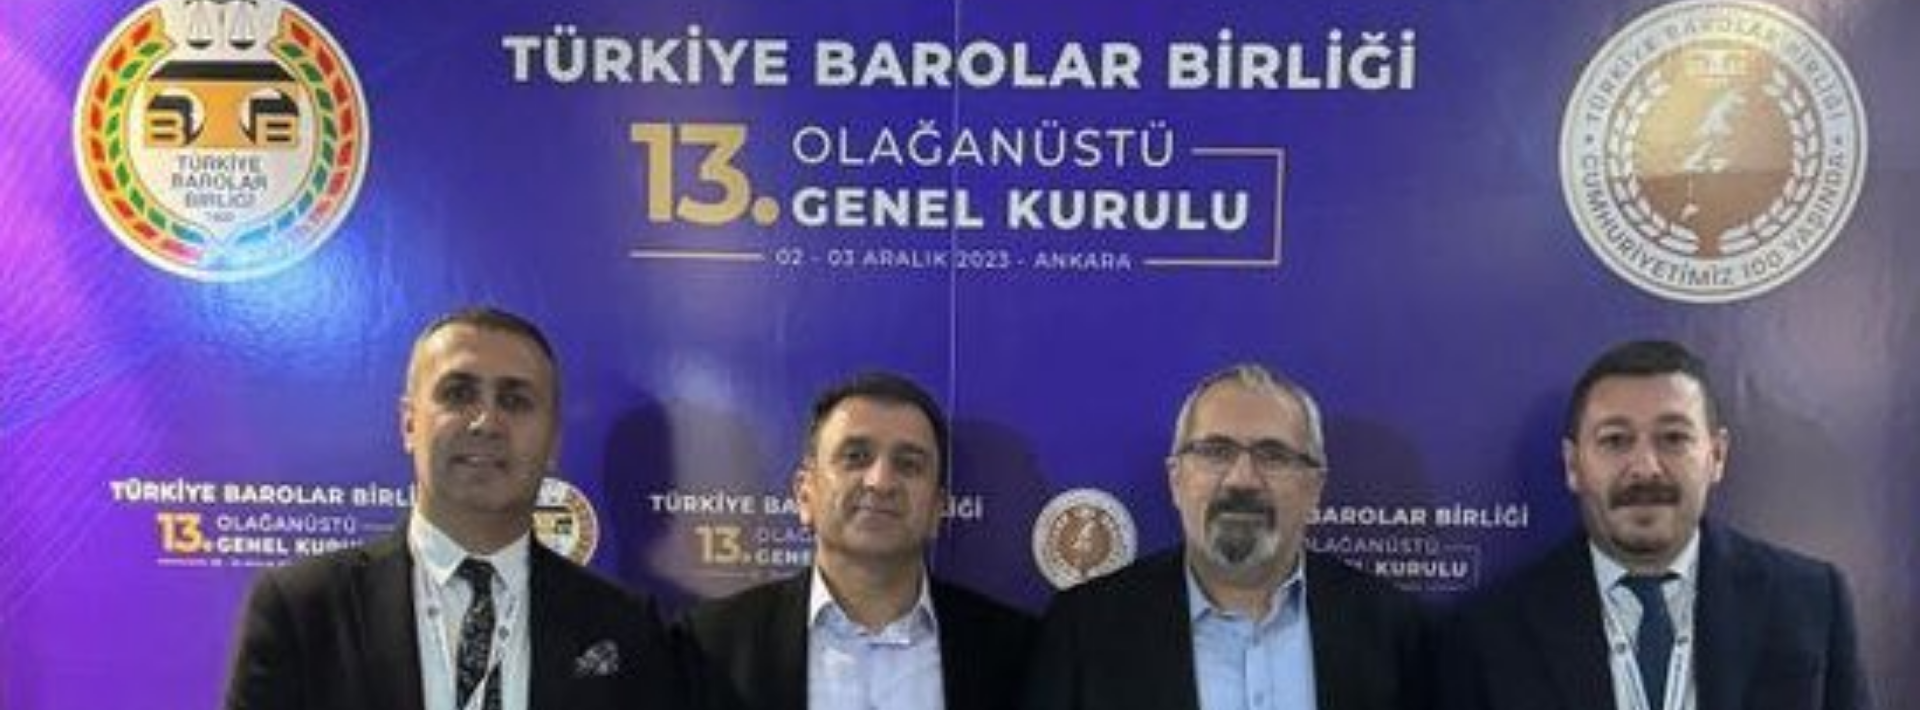 Türkiye Barolar Birliği 13. Olağanüstü Genel Kurulu